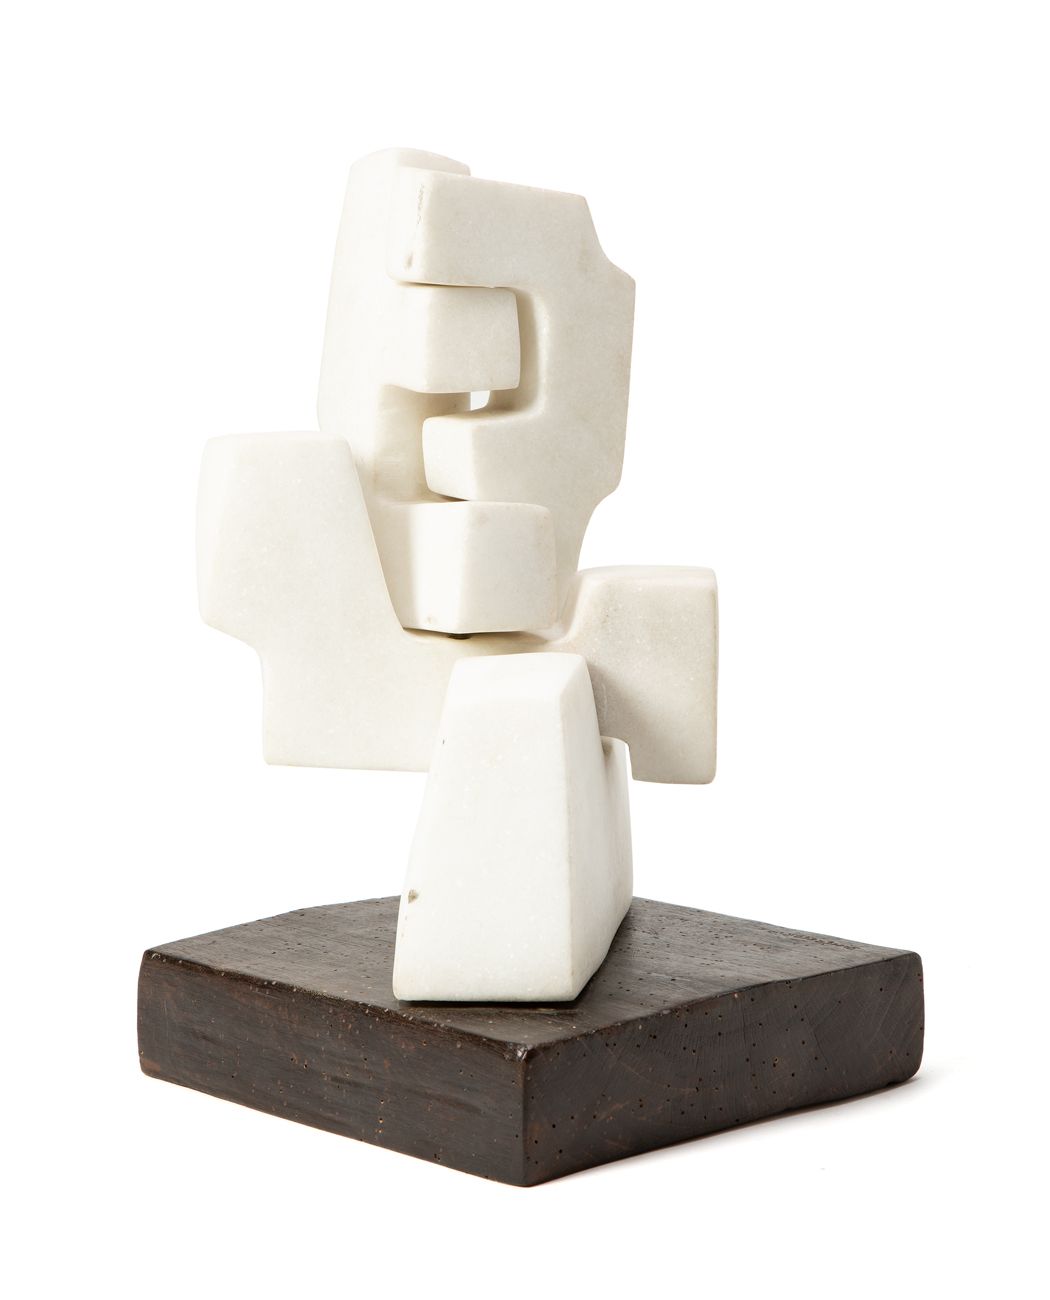 GIANCARLO SANGREGORIO (1925-2013) - Modulare, 1992 Escultura de mármol y madera
&hellip;